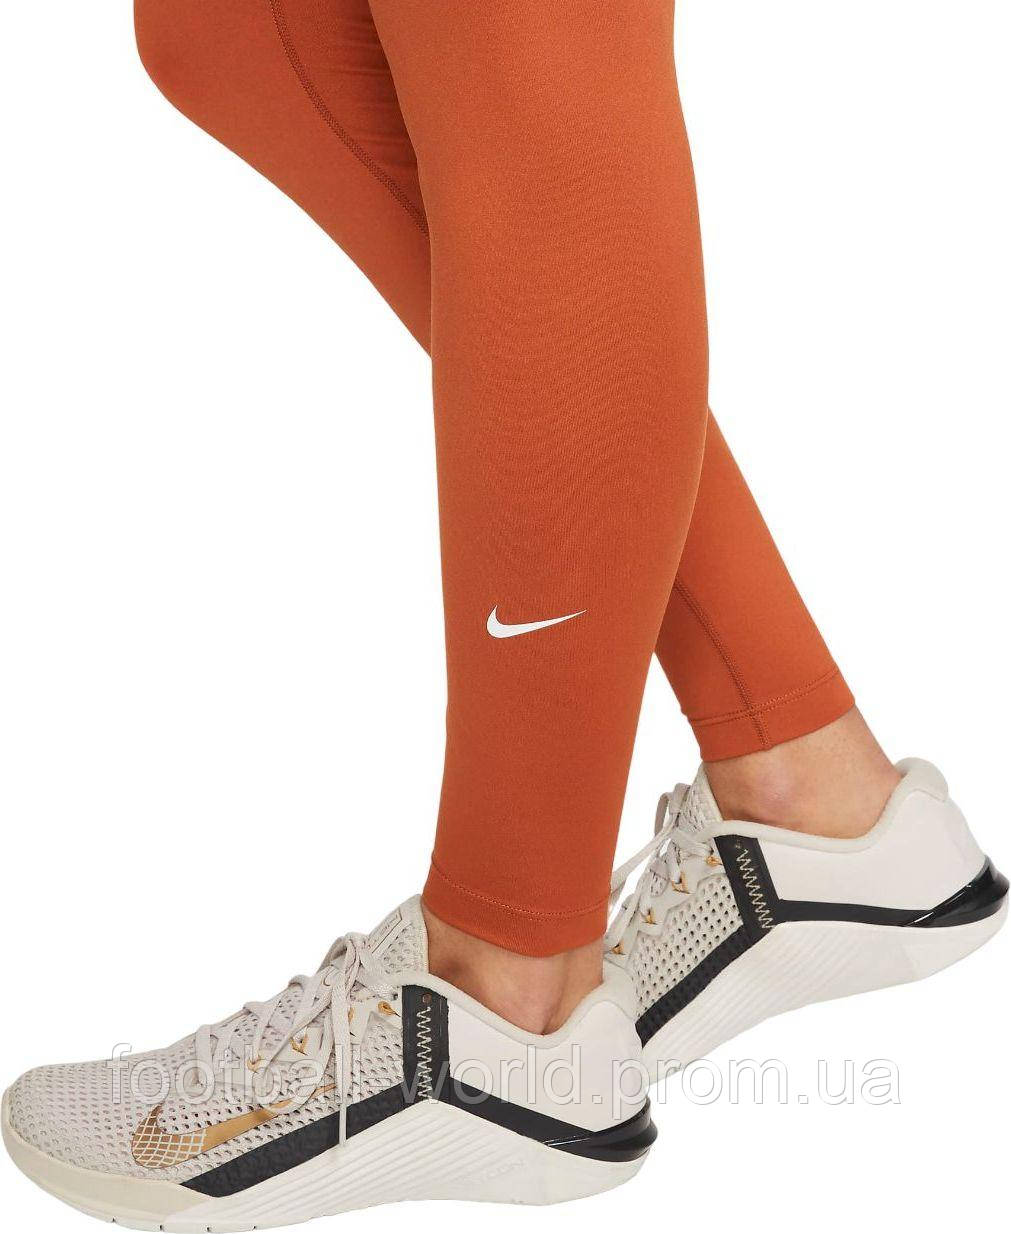 Лосины женские Nike W NP 365 TIGHT серые CZ9779-084